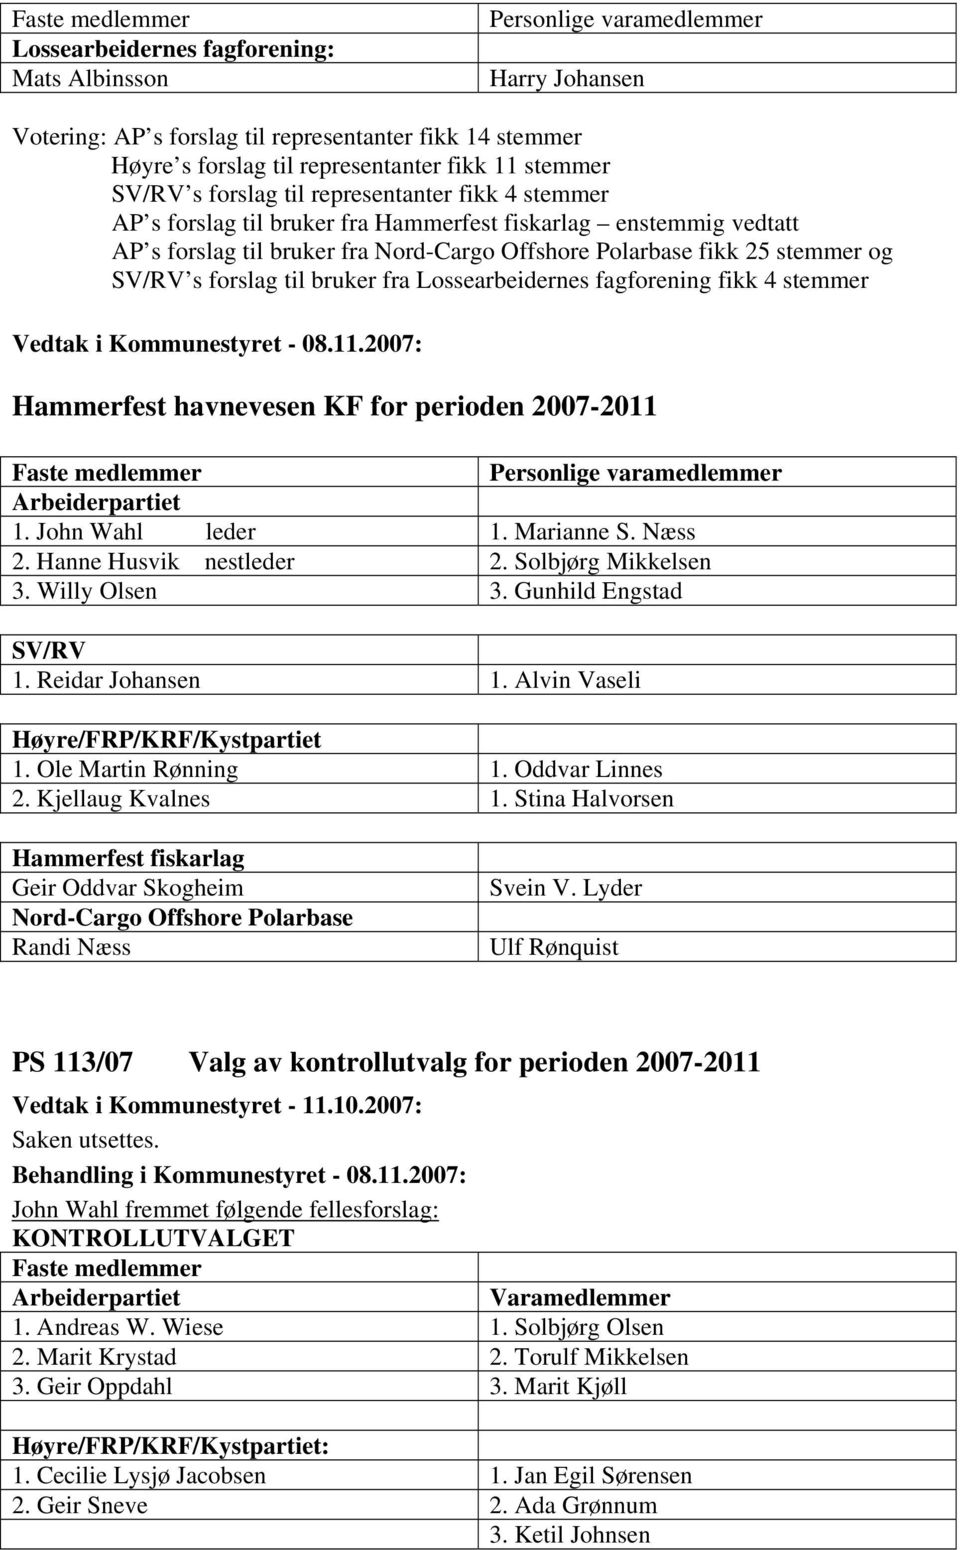 stemmer og SV/RV s forslag til bruker fra Lossearbeidernes fagforening fikk 4 stemmer Hammerfest havnevesen KF for perioden 2007-2011 Faste medlemmer Personlige varamedlemmer 1. John Wahl leder 1.